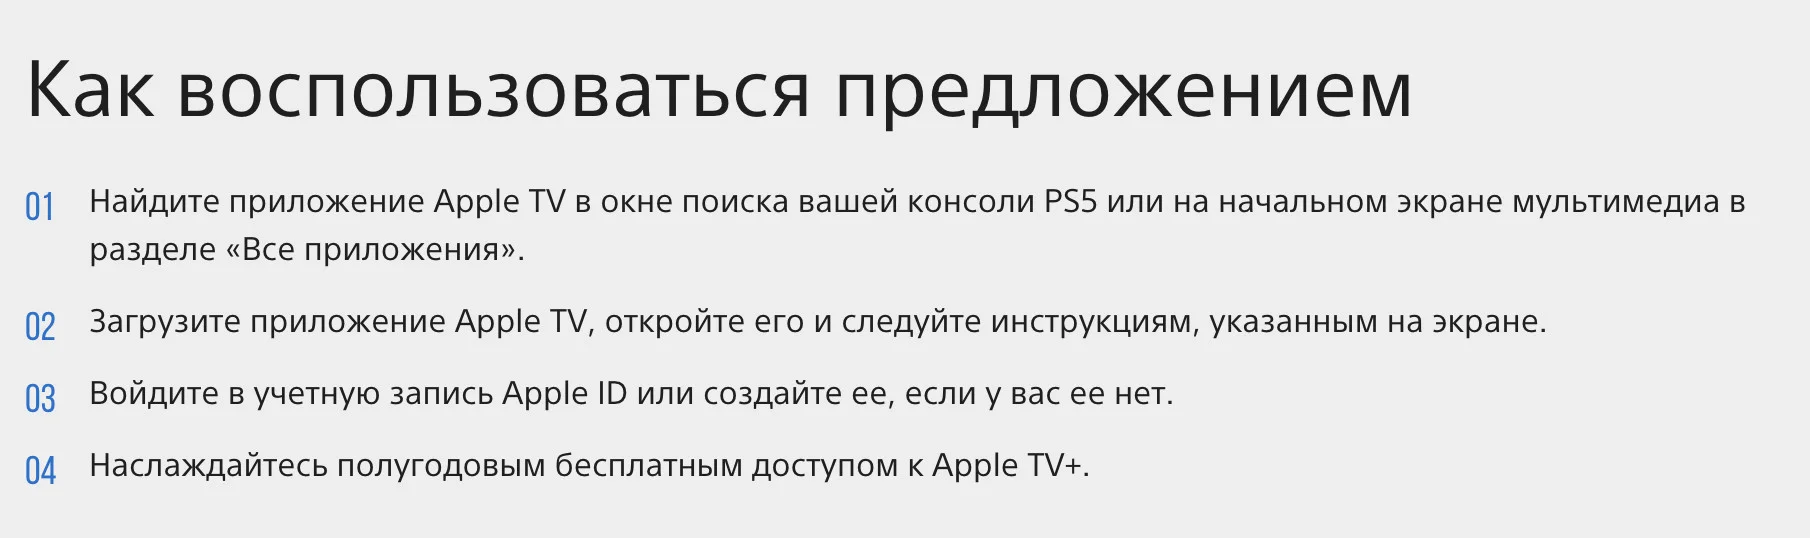 Всем владельцам PS5 дарят 6 месяцев подписки Apple TV+ - фото 1